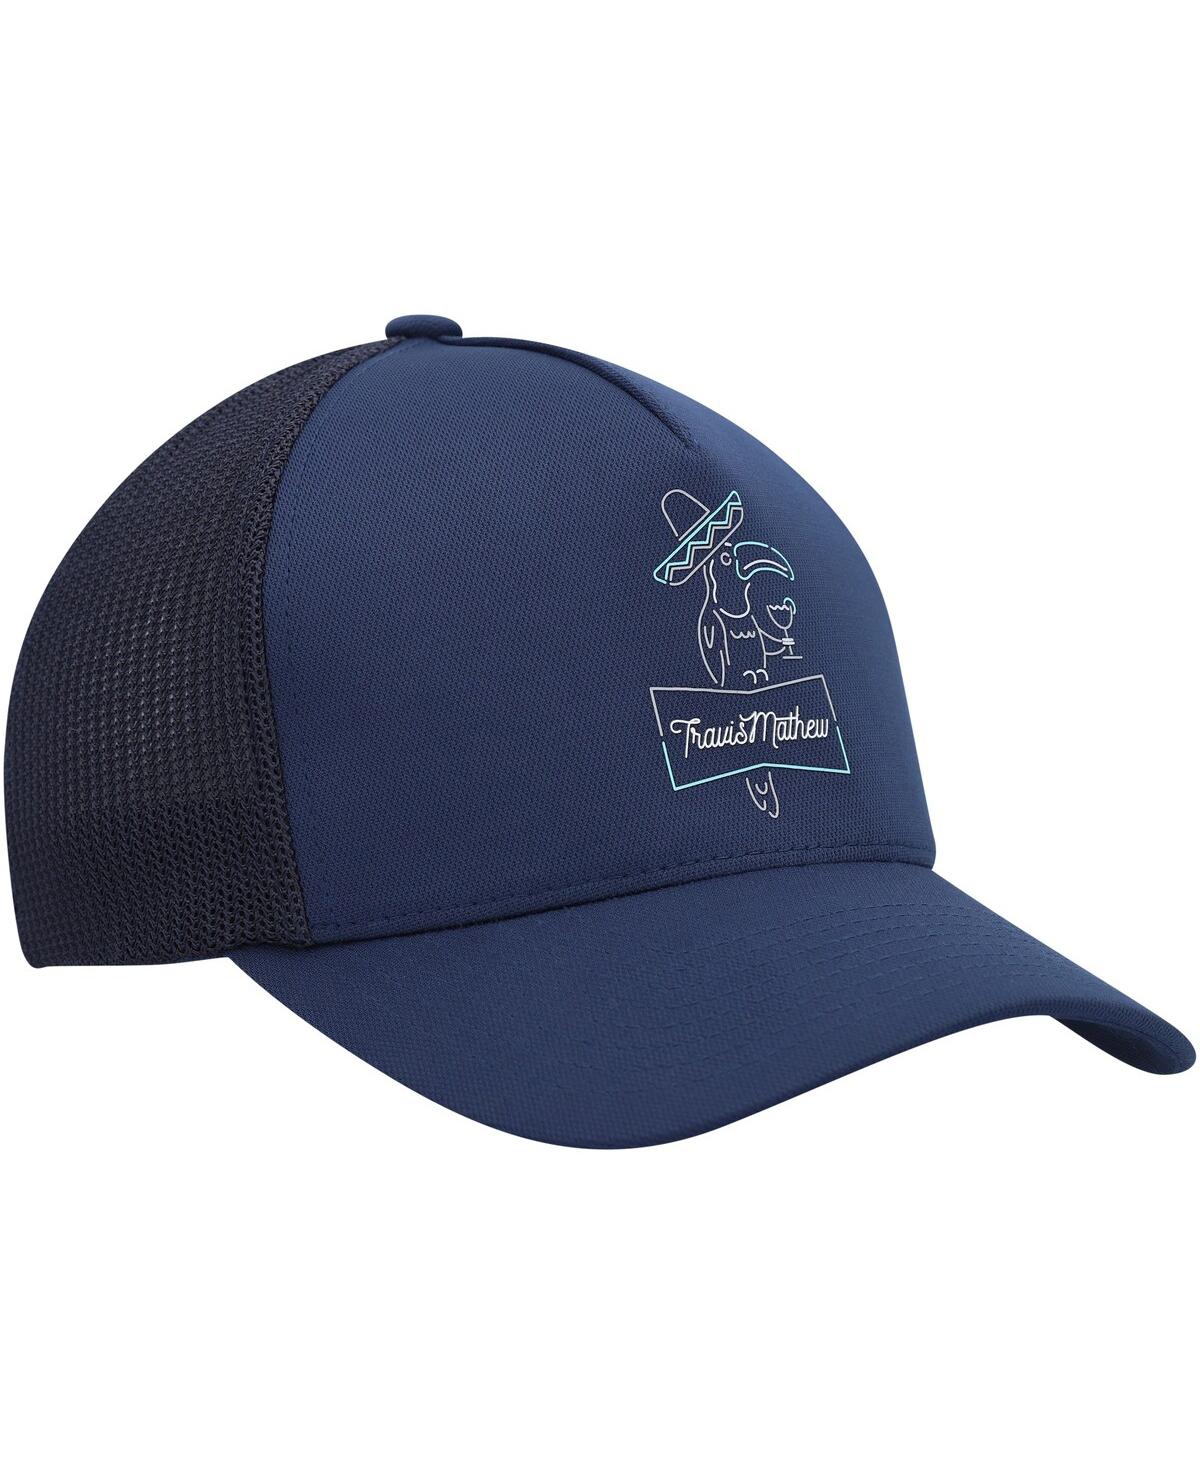 Shop Travis Mathew Men's  Navy Morelia Trucker Adjustable Hat